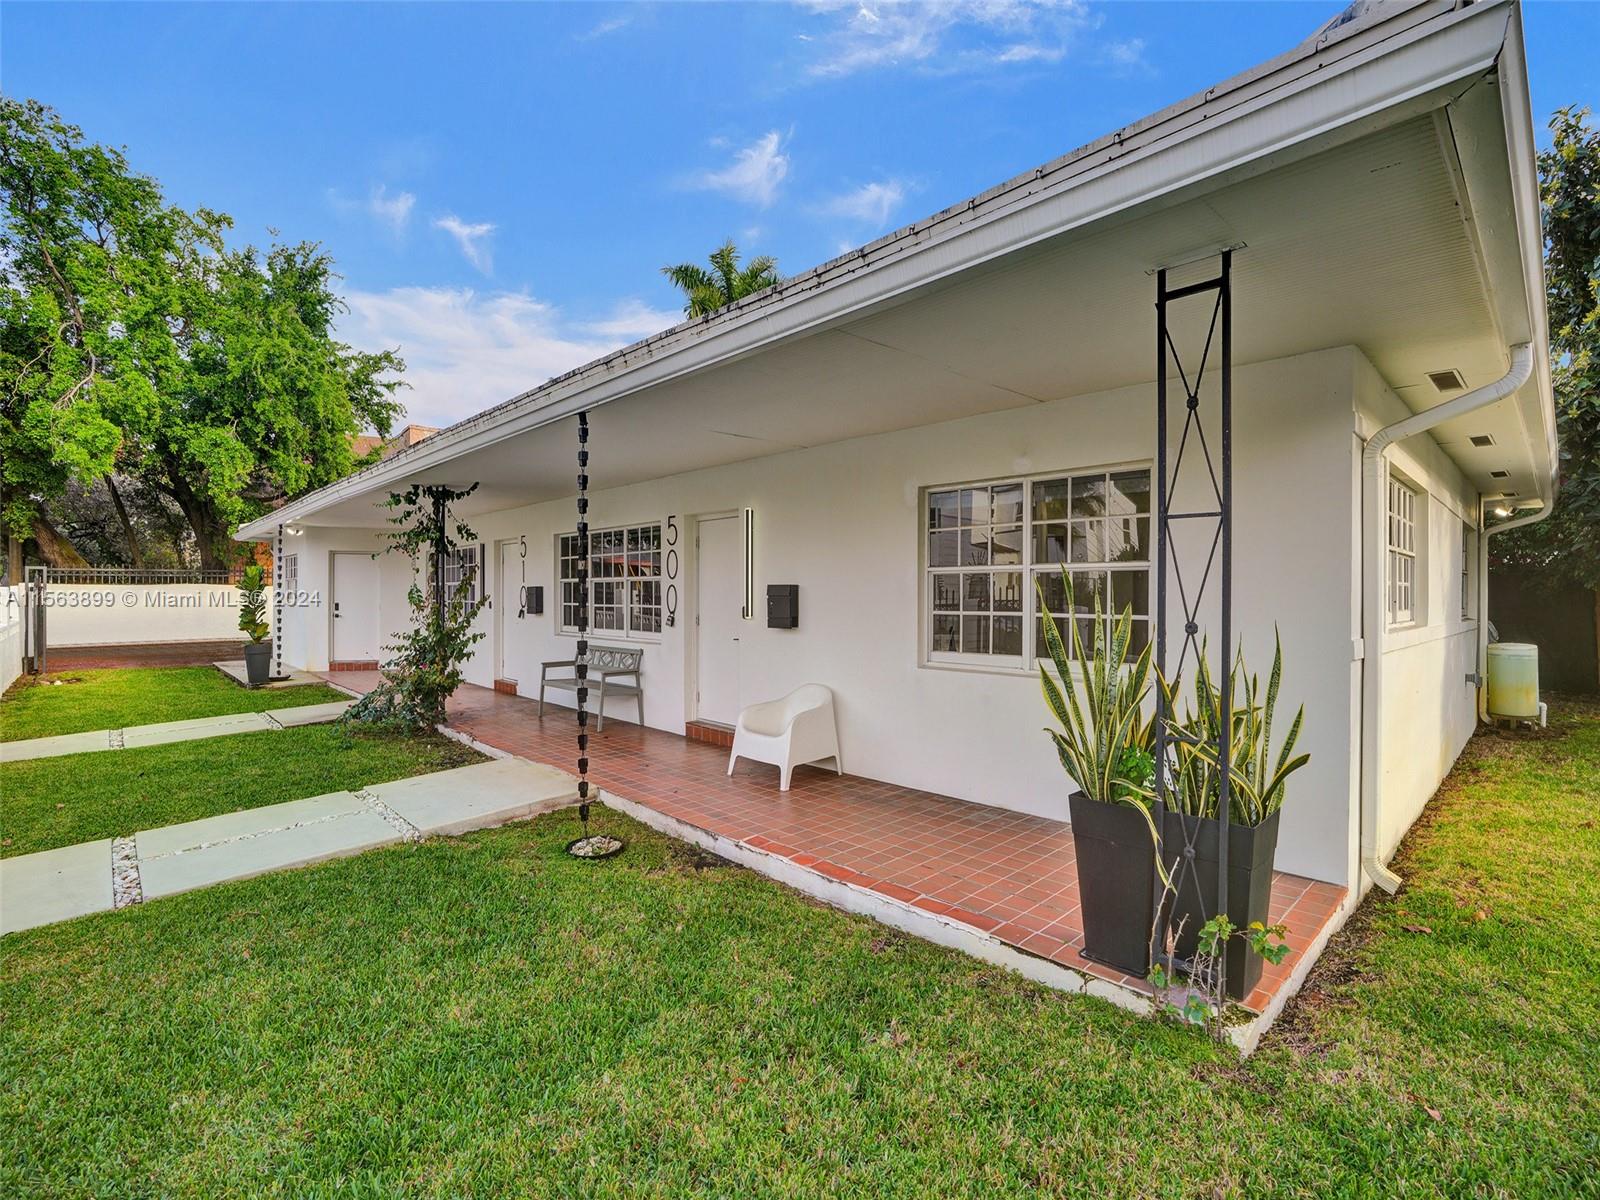 Rental Property at 510 Ne 66th St, Miami, Broward County, Florida -  - $1,299,900 MO.